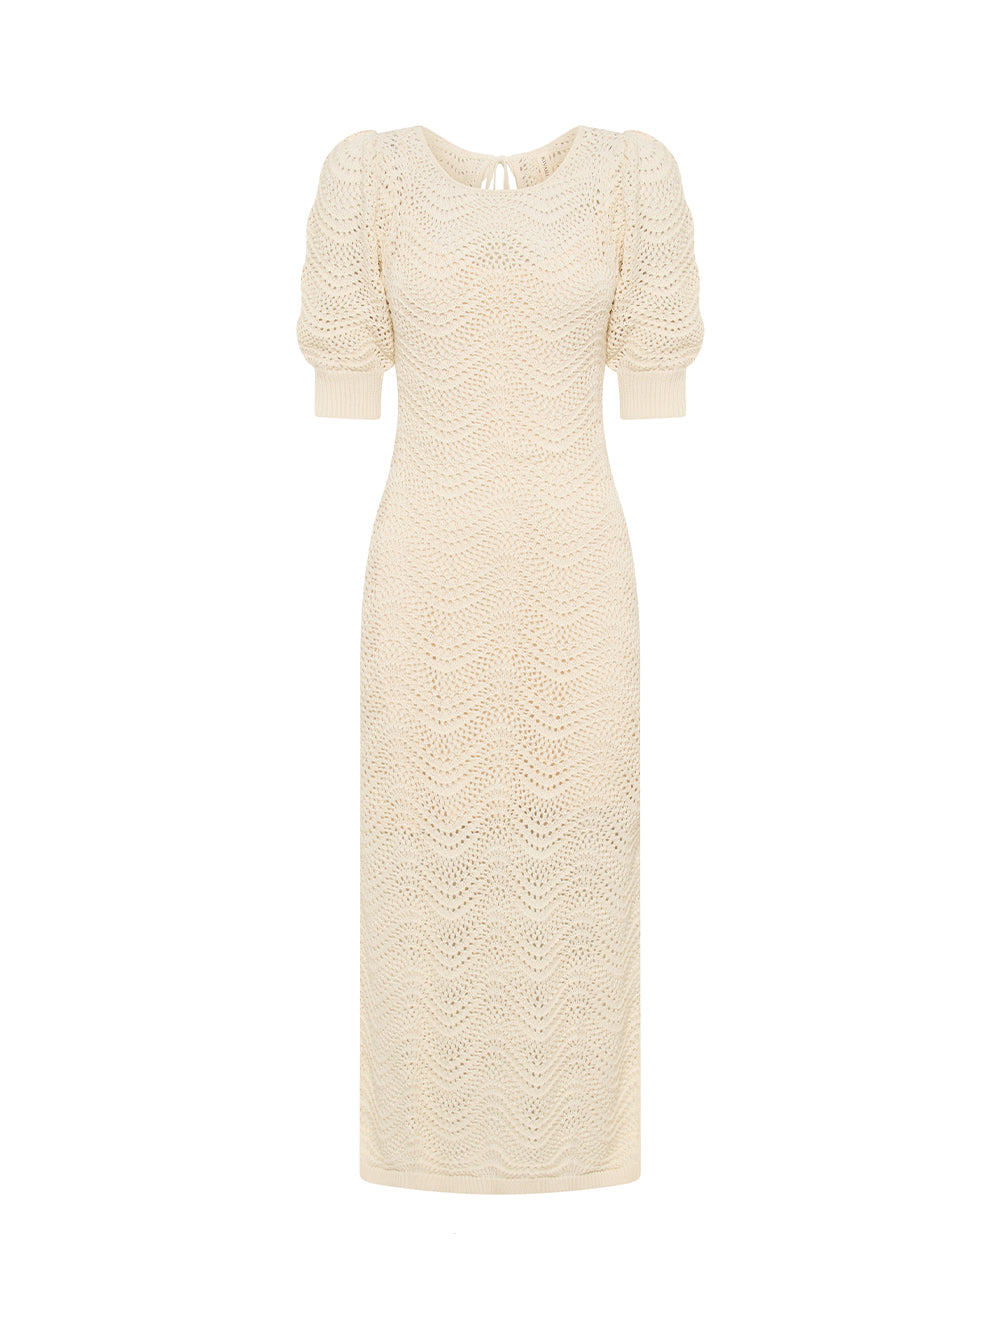 Mariana Knit Dress KIVARI | Cream knit dress